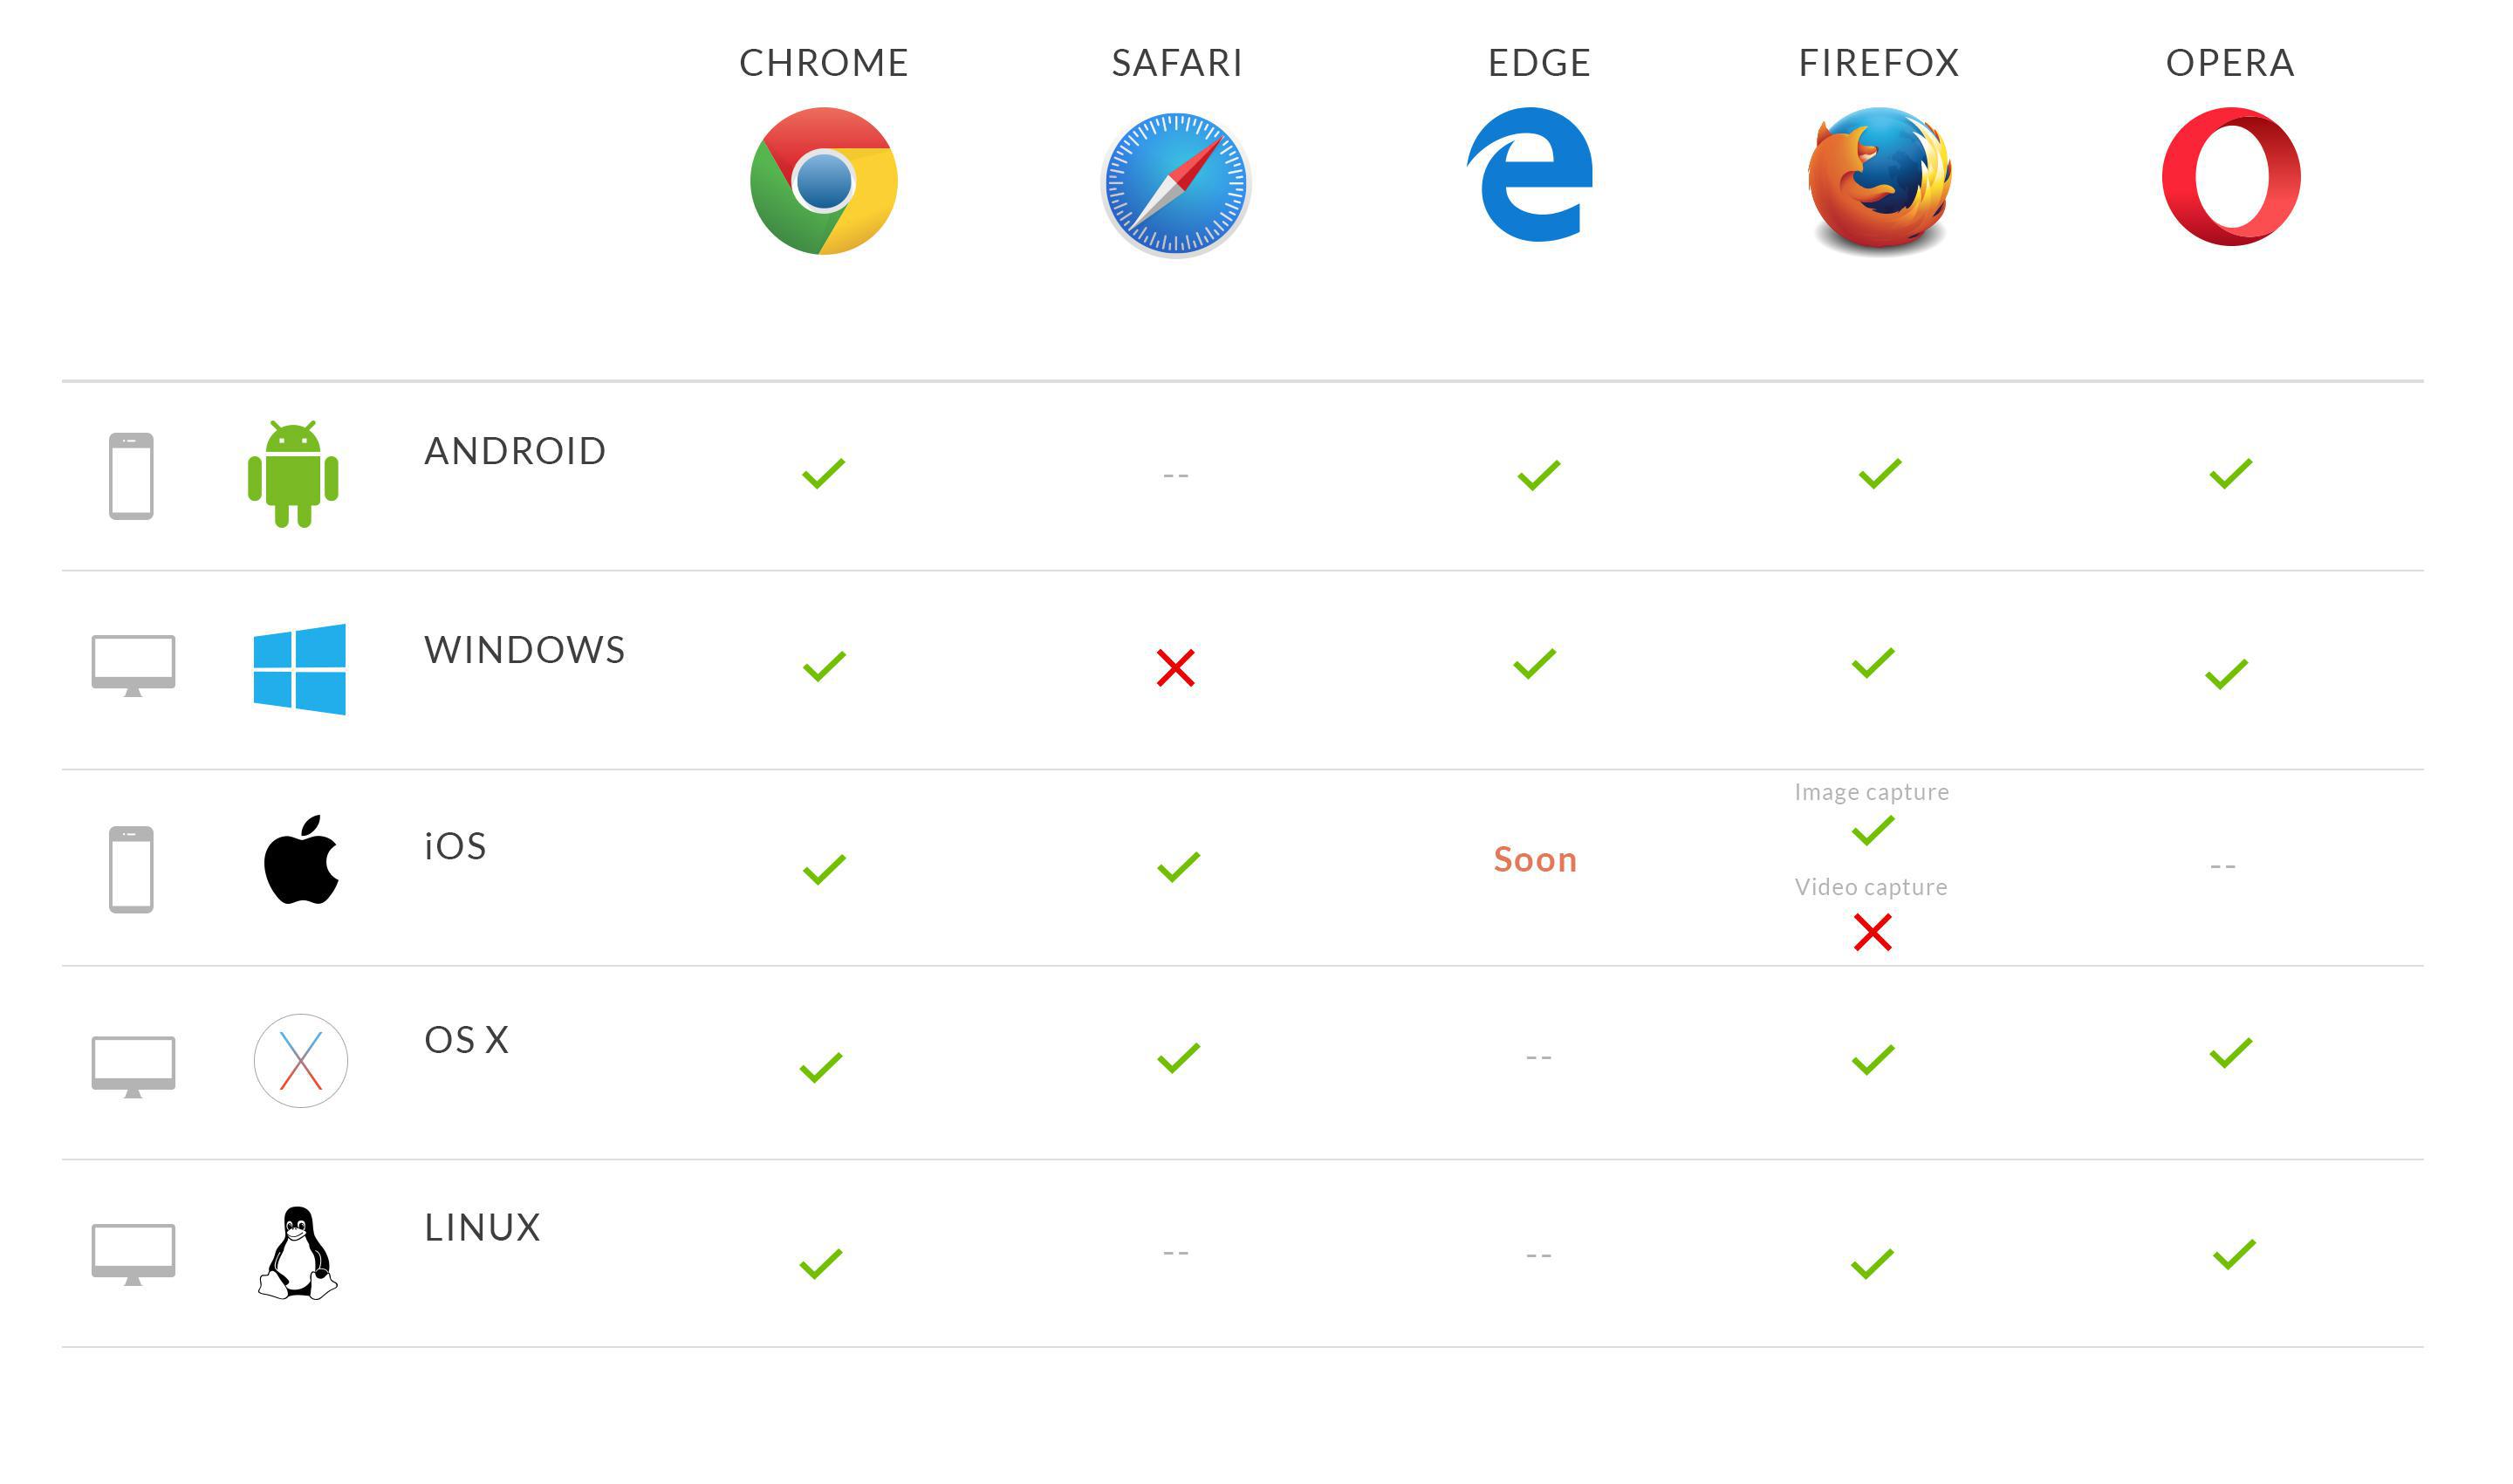 Compatibilità dei browser con la cattura di immagini e video